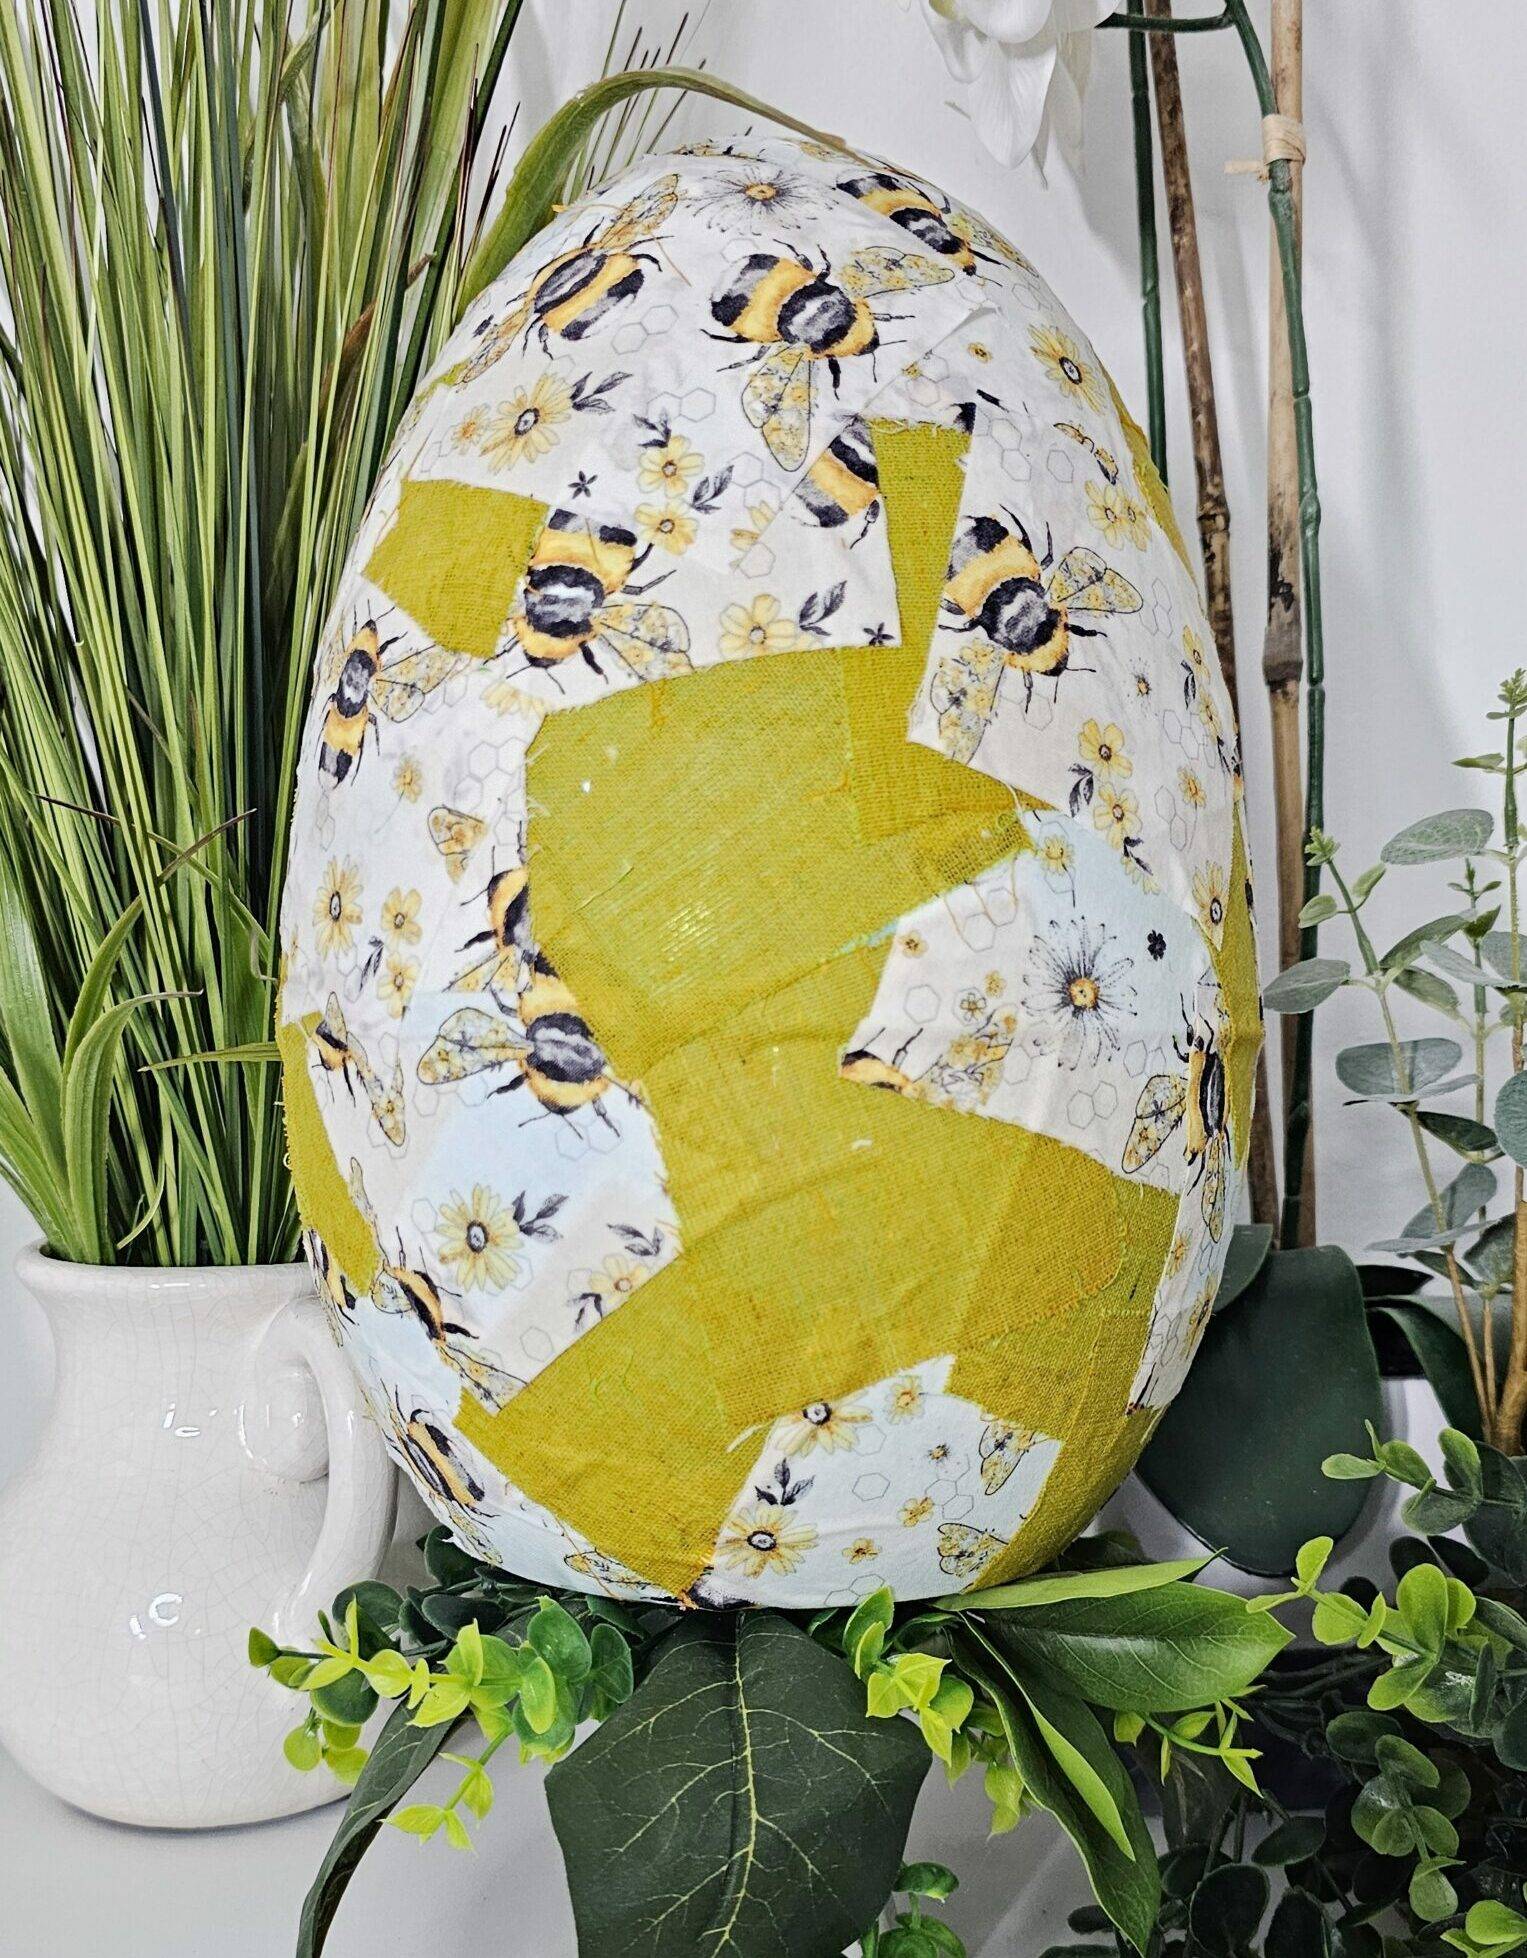 Let's make this easy Dollar Tree Easter egg decor!